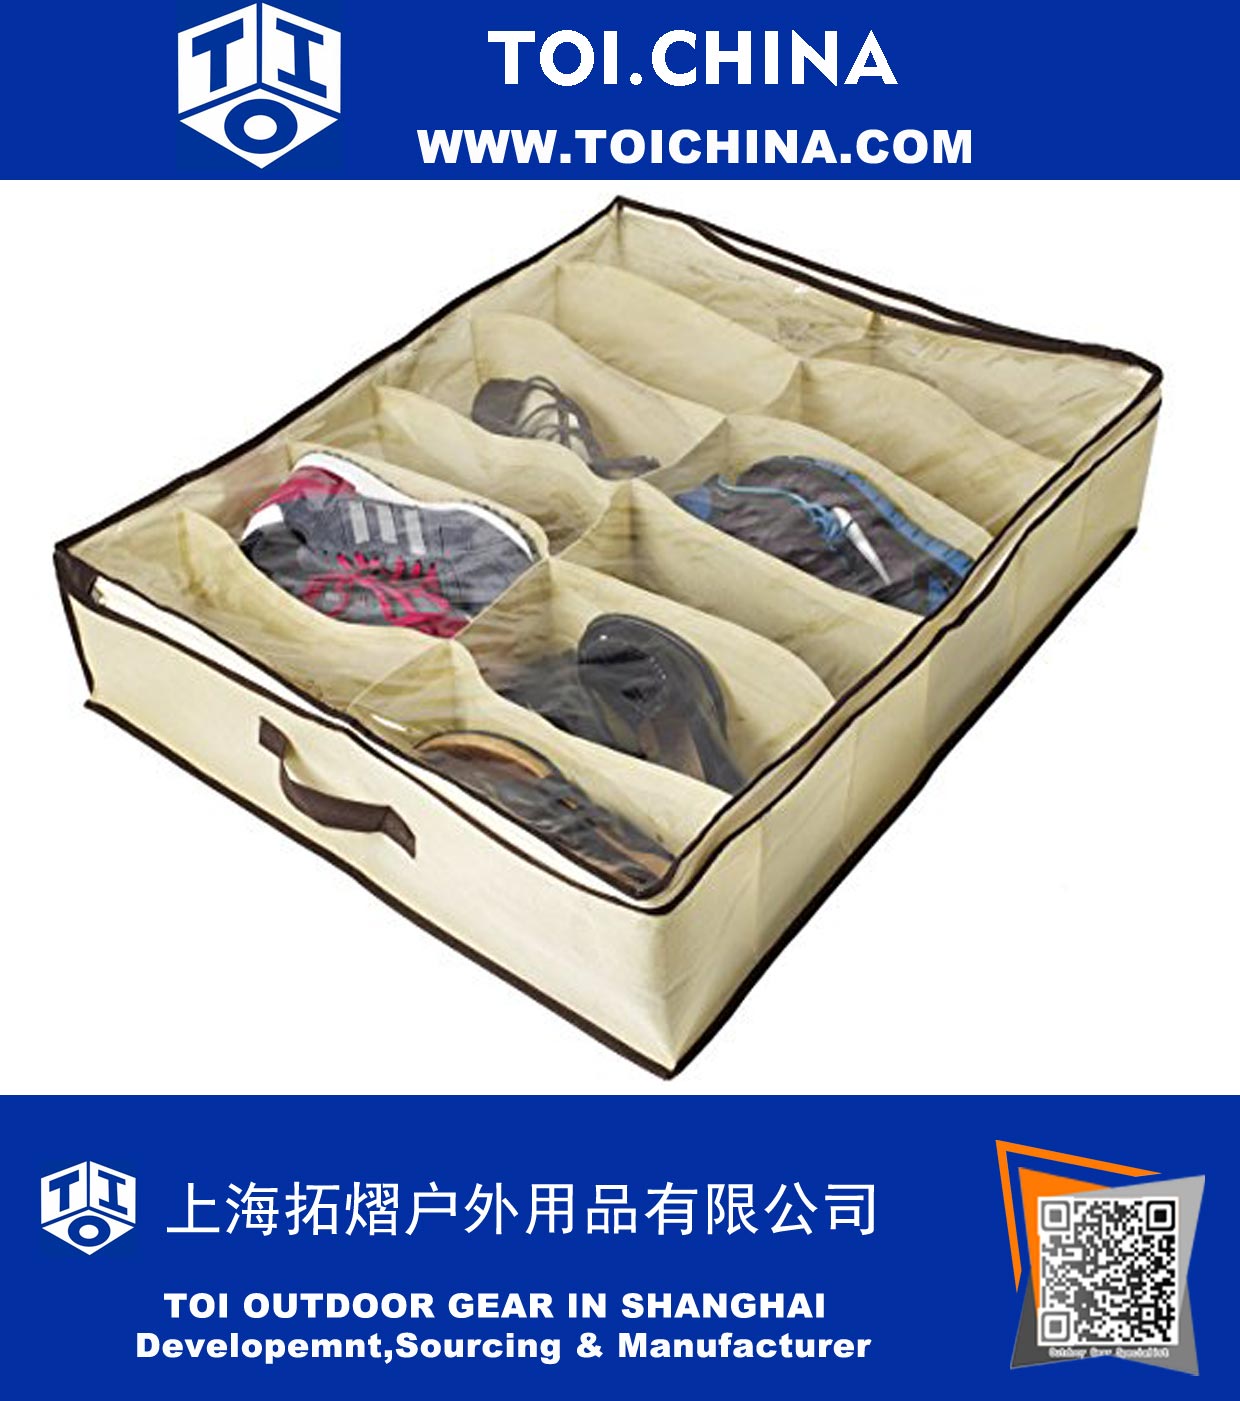 Organizador de zapatos para niños y adultos (12 pares) - zapatos debajo de la cama solución de almacenamiento del armario - Hecho de materiales transpirables con cierre frontal con cremallera